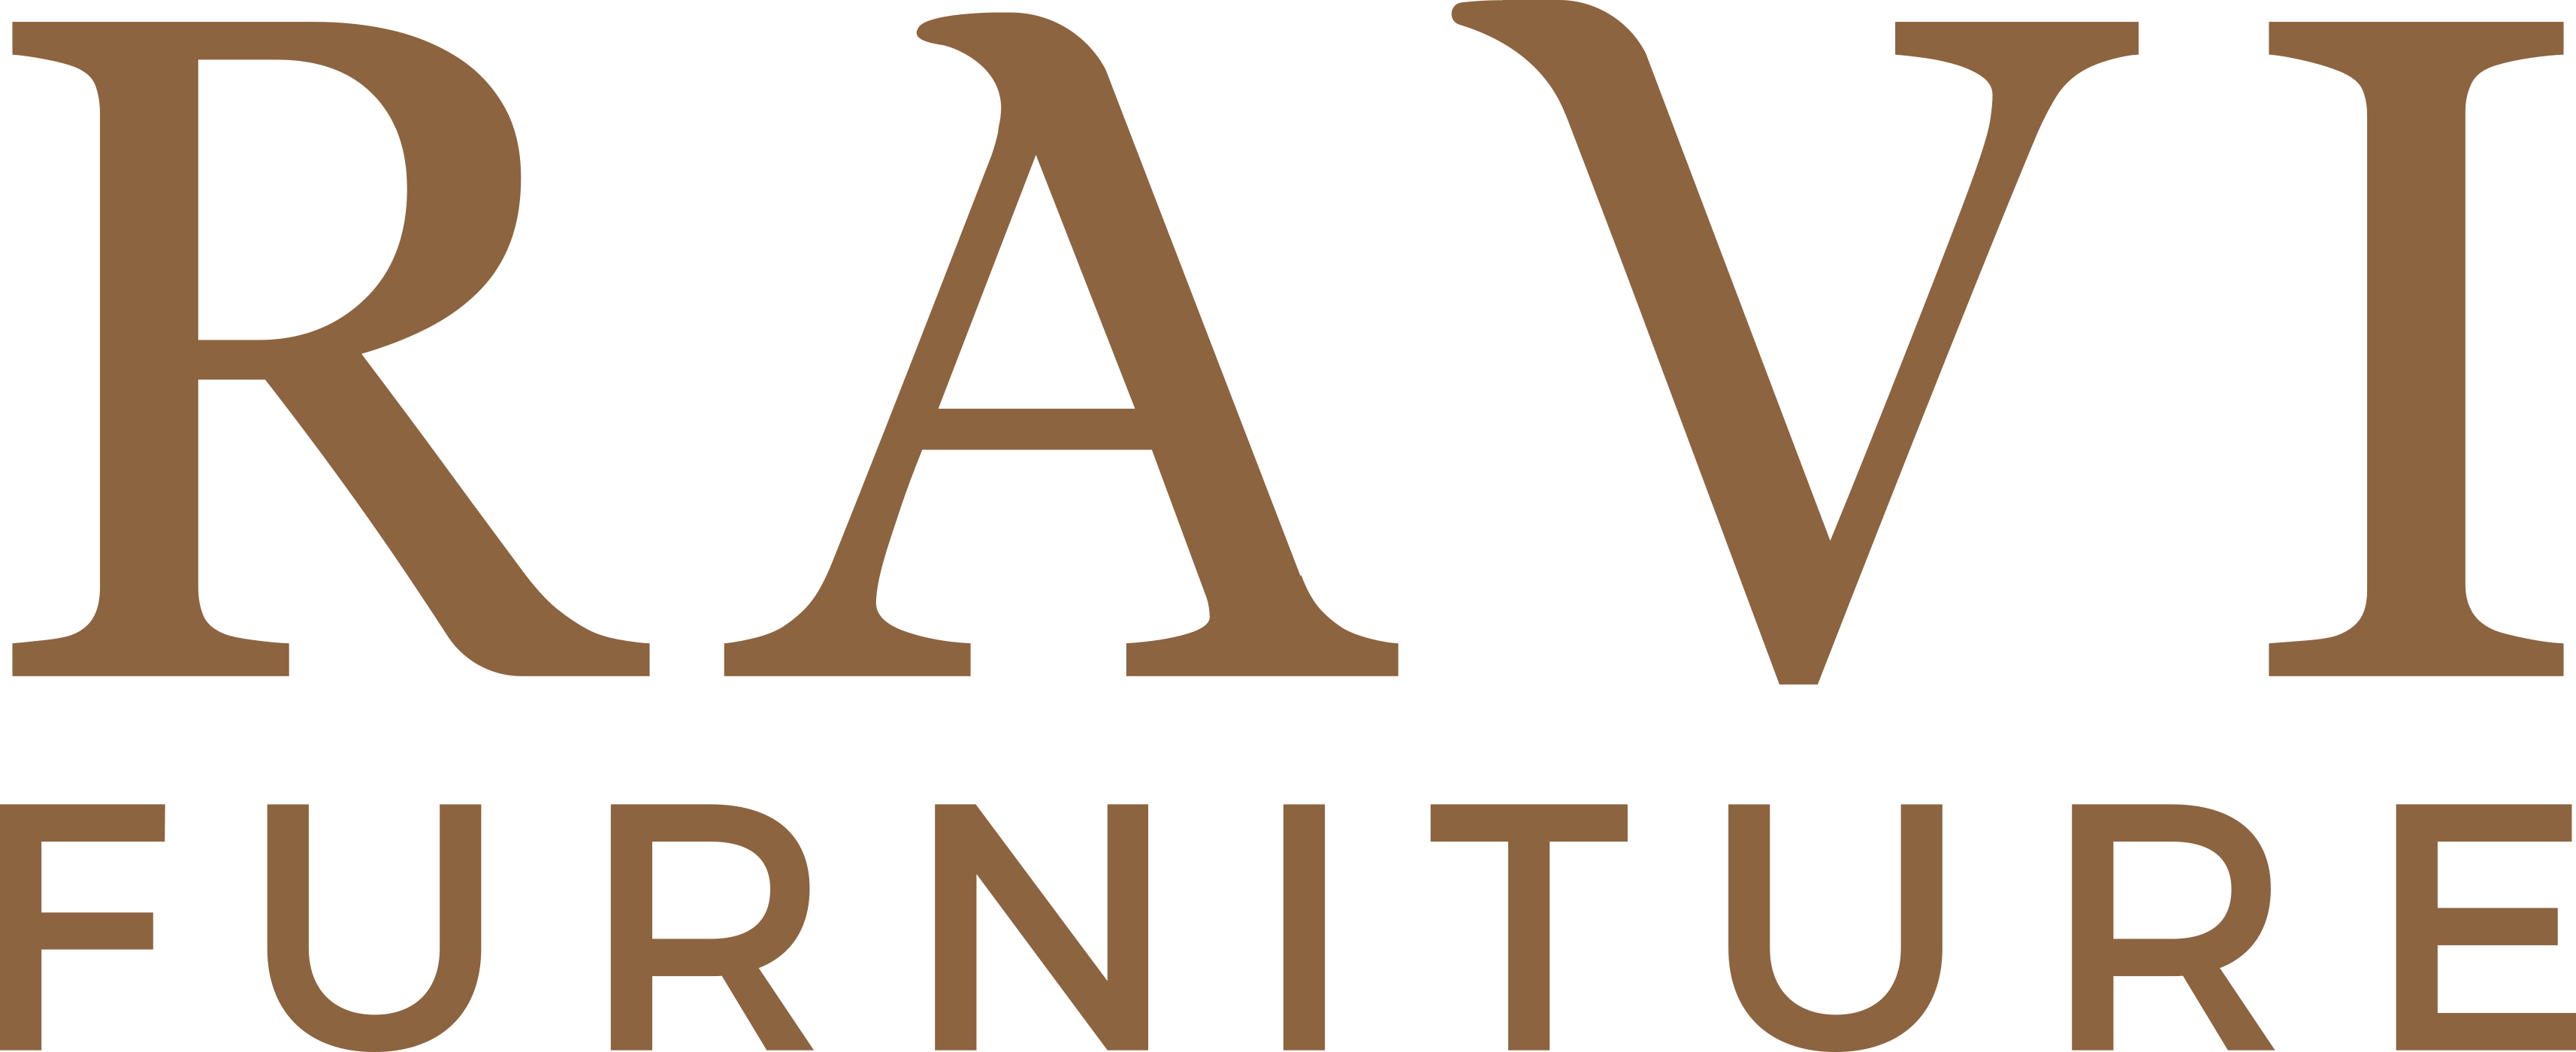 RAVI FURNITURE Logo